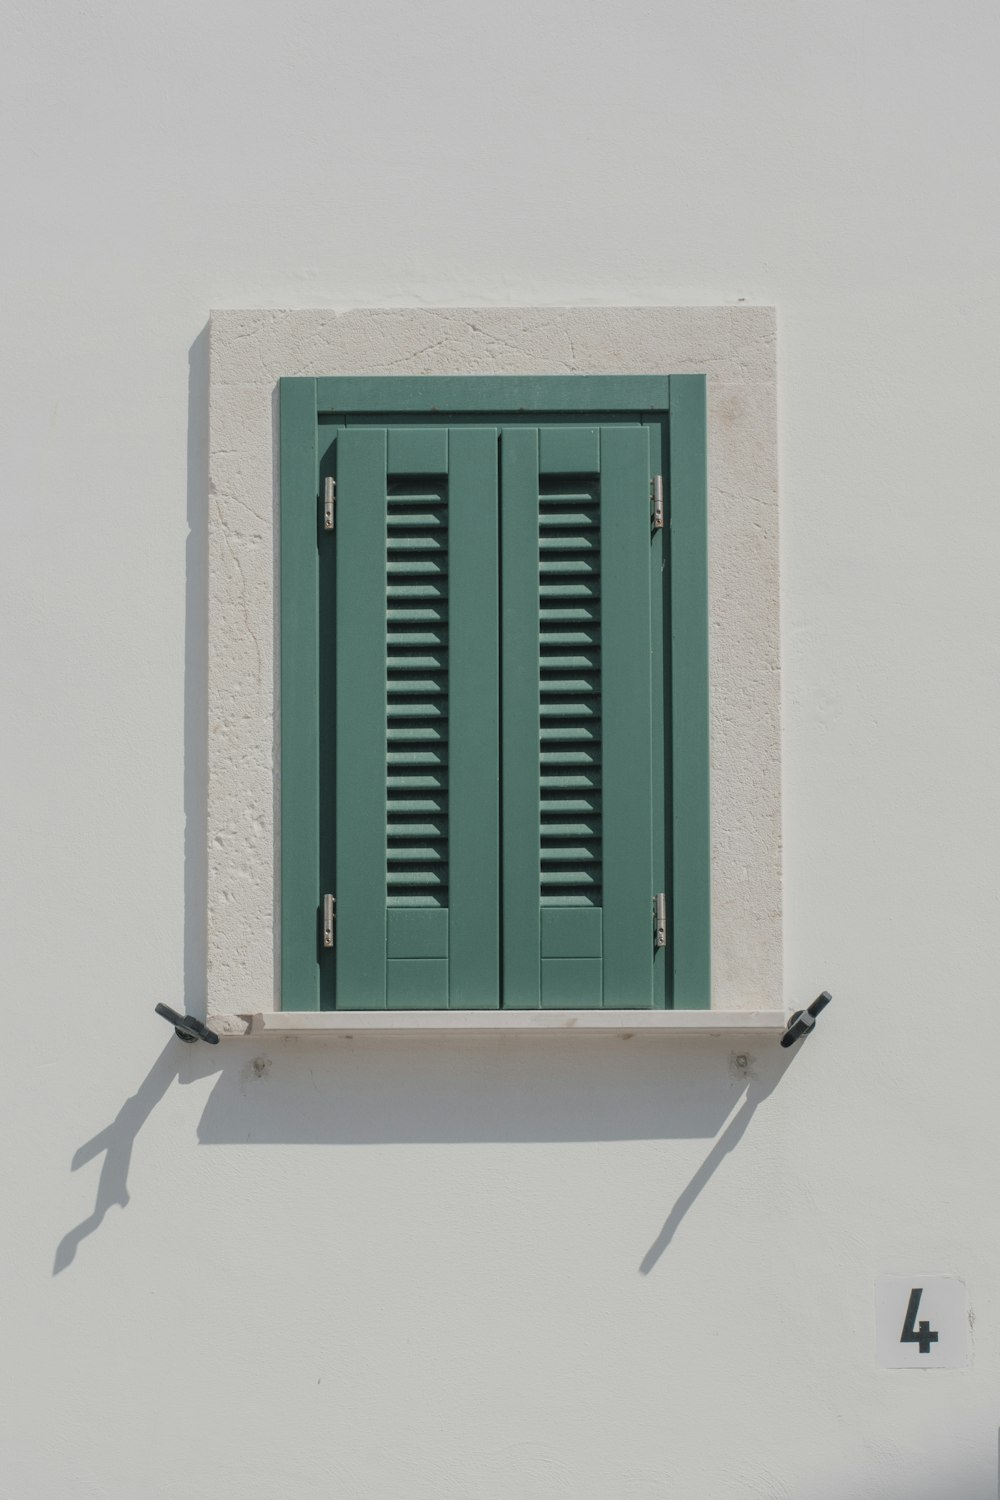 Fenêtre en bois vert sur mur blanc